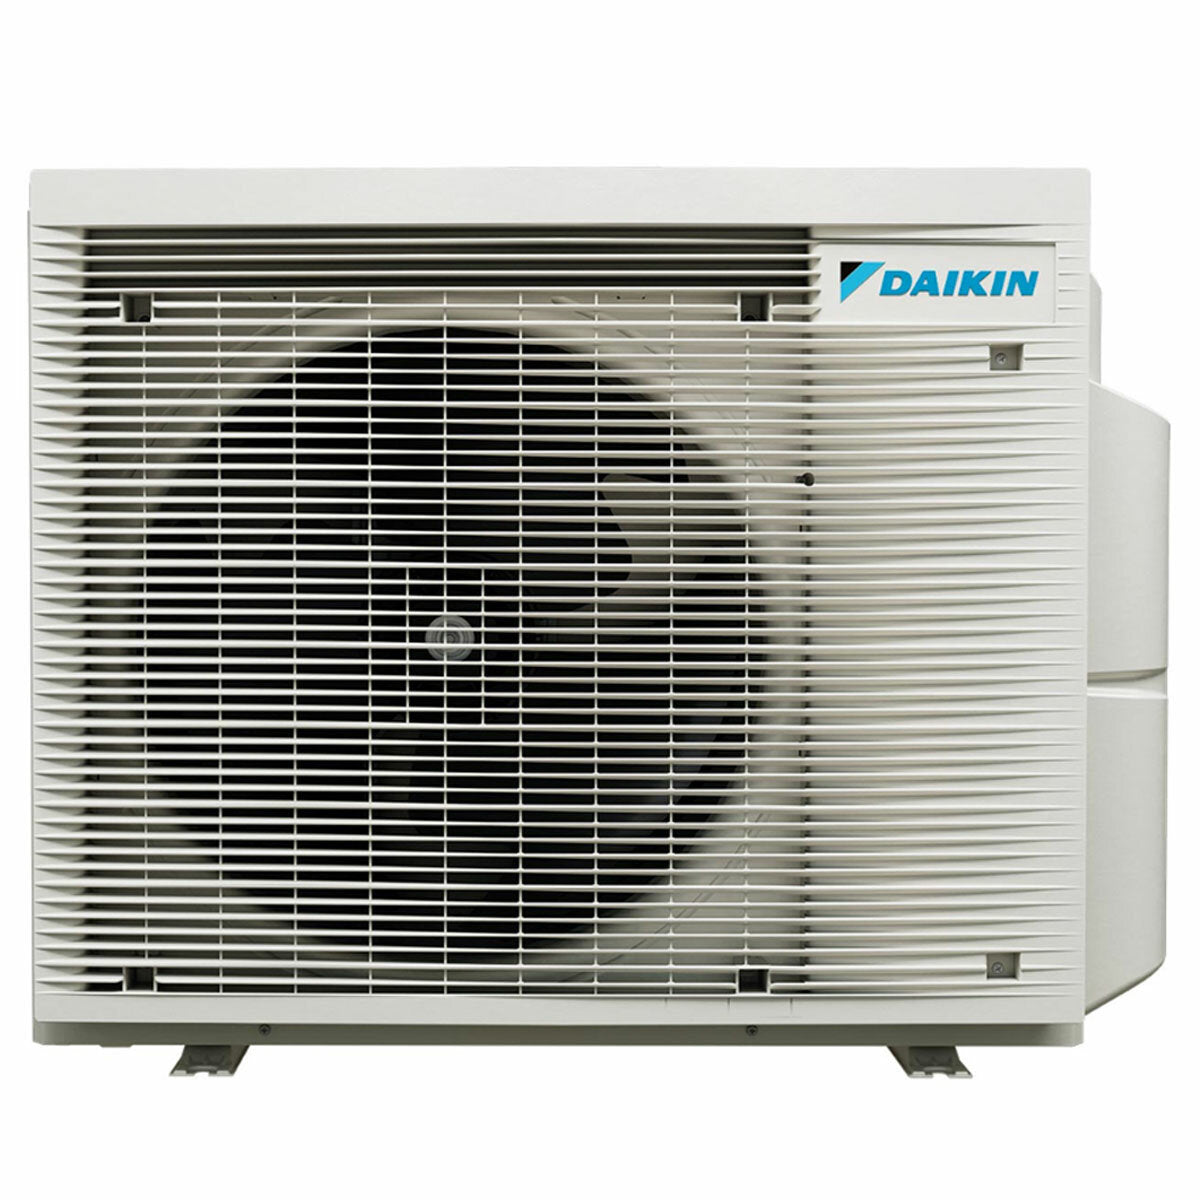 Daikin Stylish Trial Split Klimaanlage 9000 + 9000 + 12000 BTU Inverter A++ WLAN Außengerät 6,8 kW